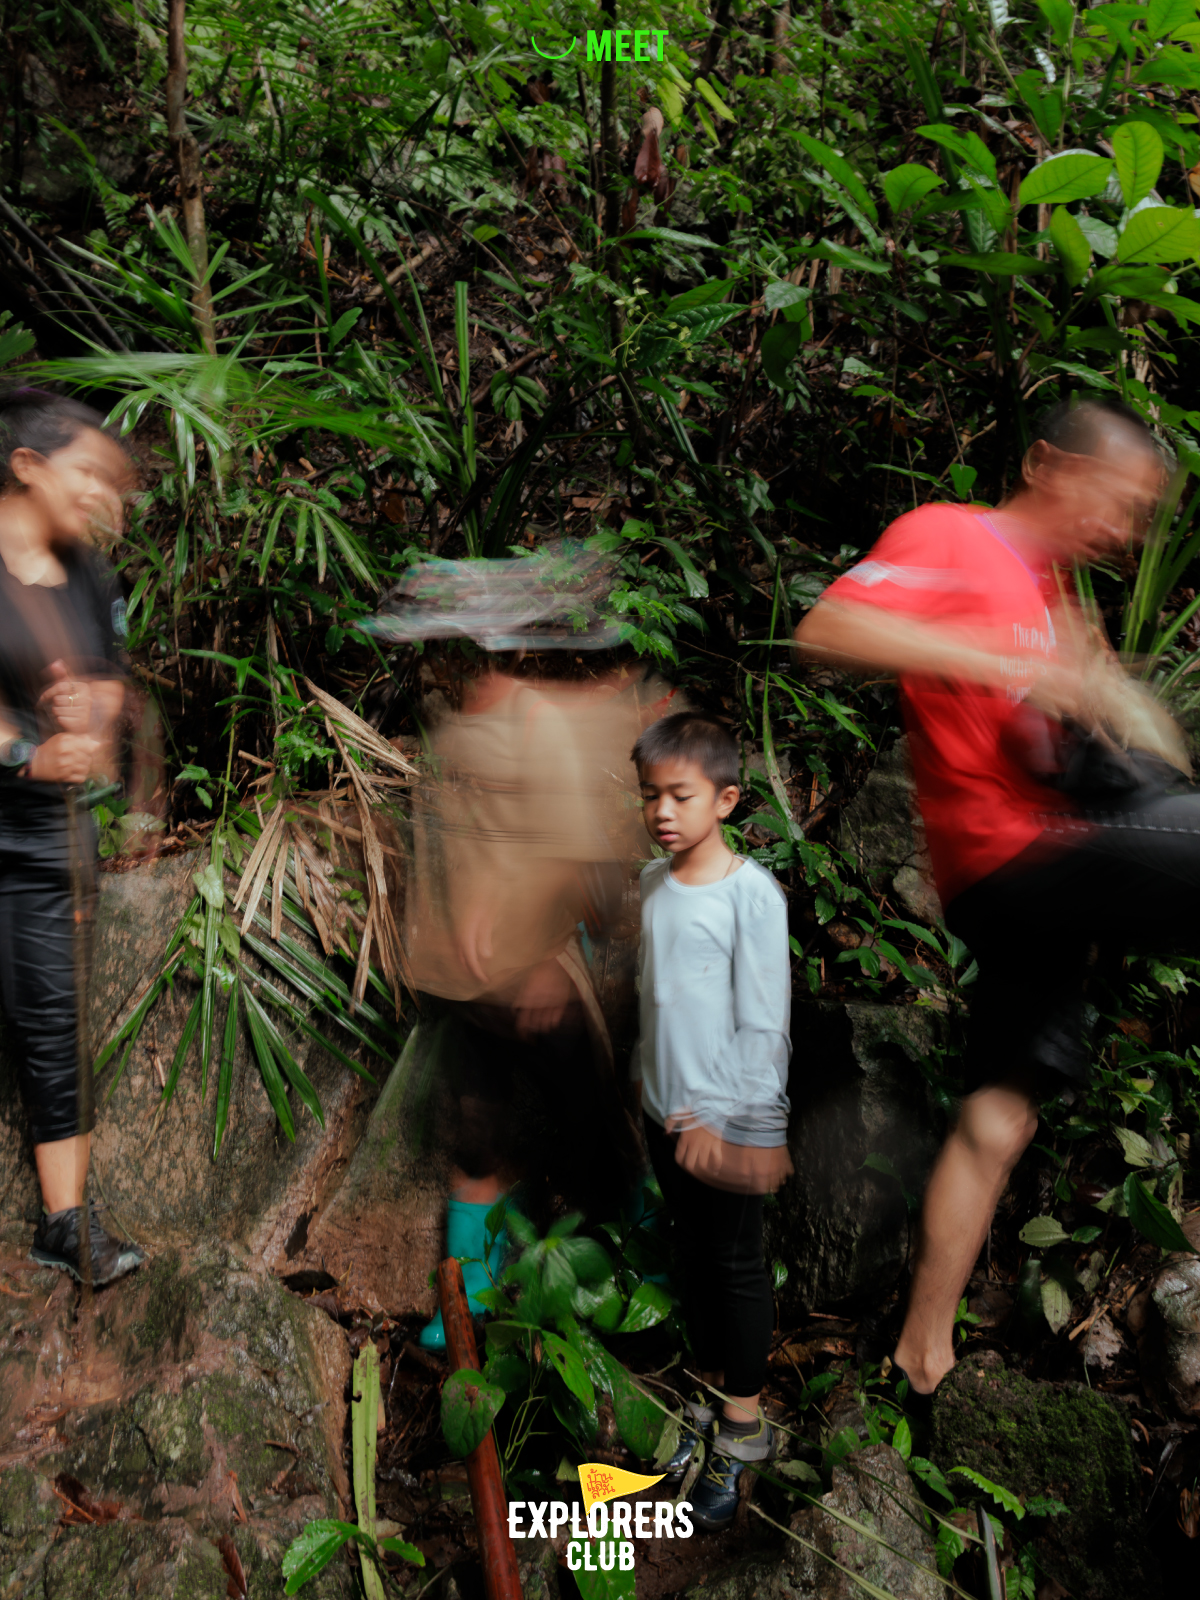 น้อง ธีร์ พึ่งสุข นักเดินไพรวัย 7 ขวบ เด็กหลง(ใหล)ป่า ขอแม่มาคนเดียว เที่ยวเองได้